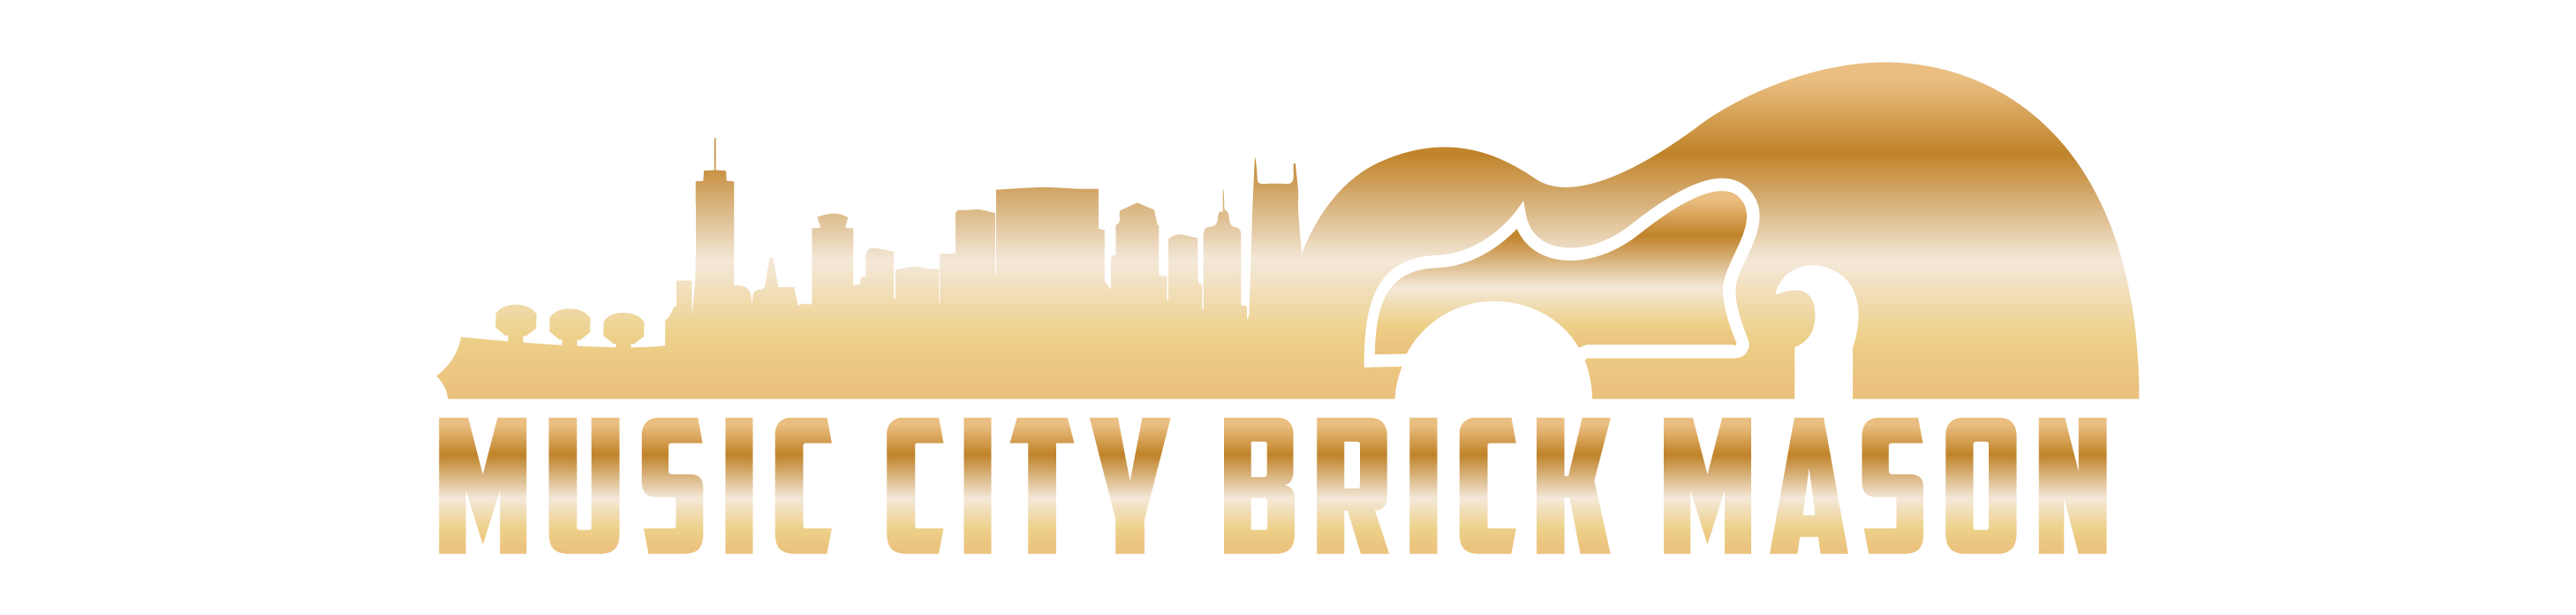 music city brick mason-01